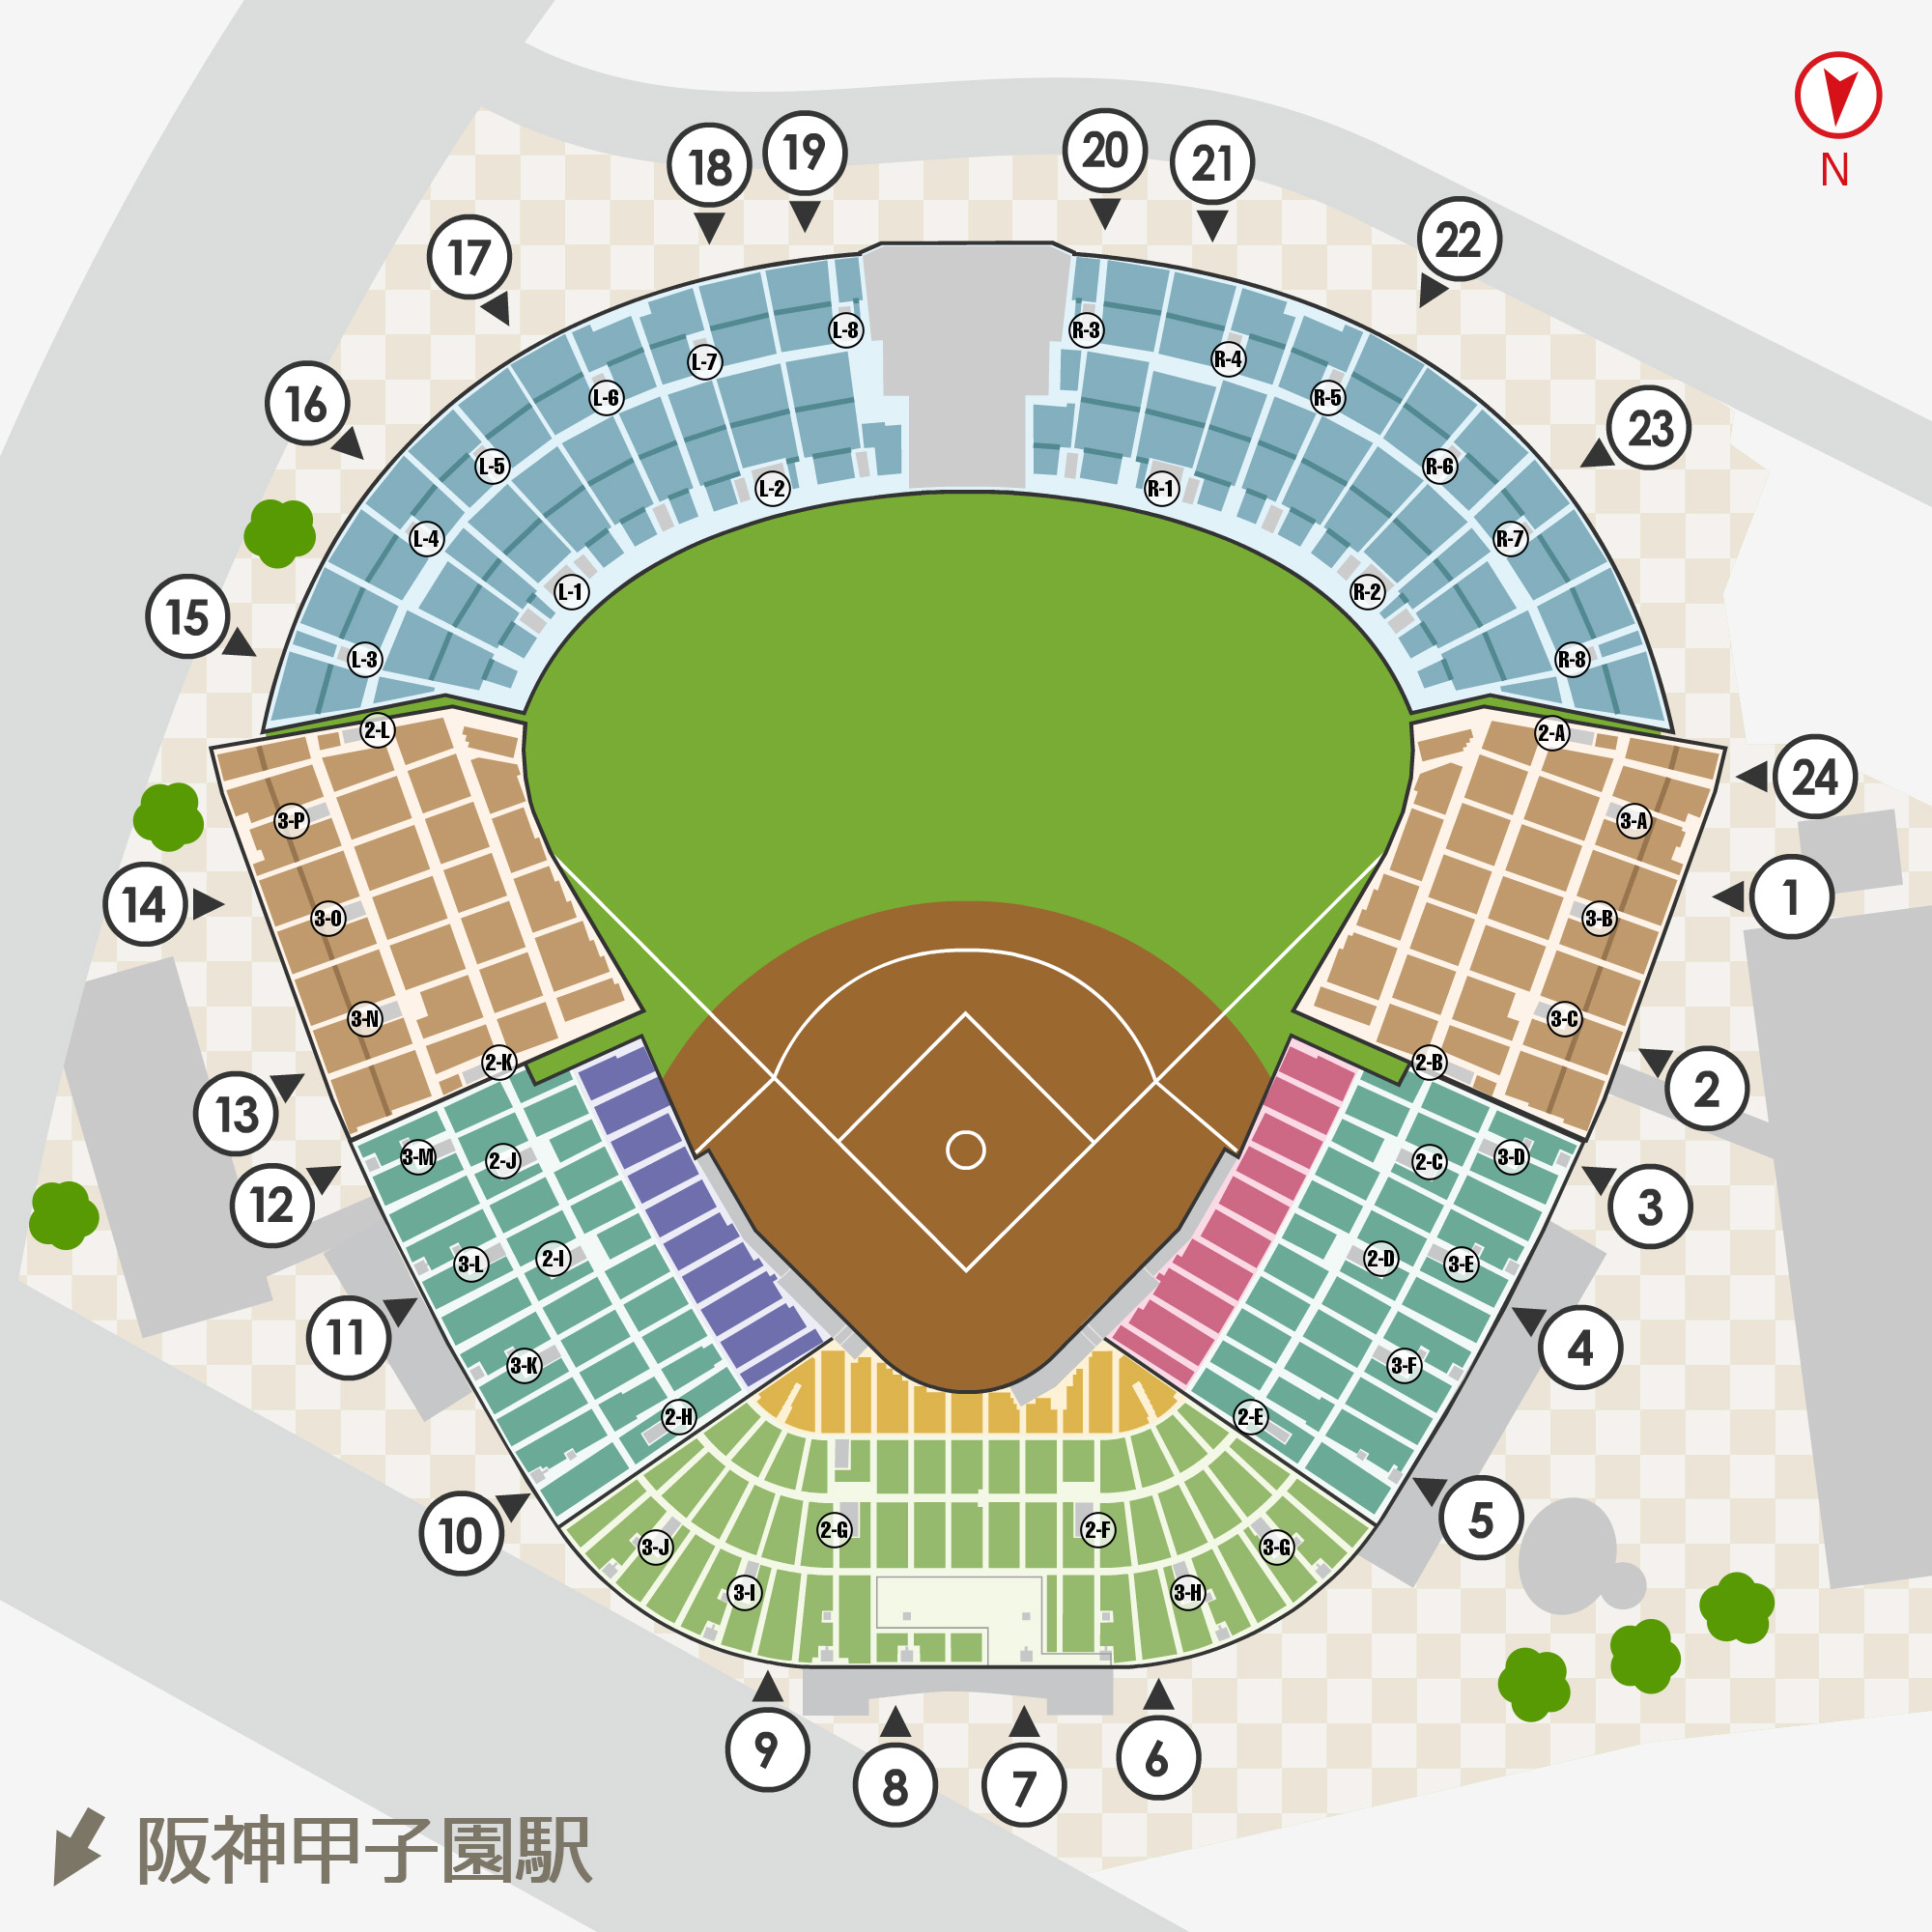 阪神 VS 巨人 9月12日 レフト外野指定席 通路側ペア